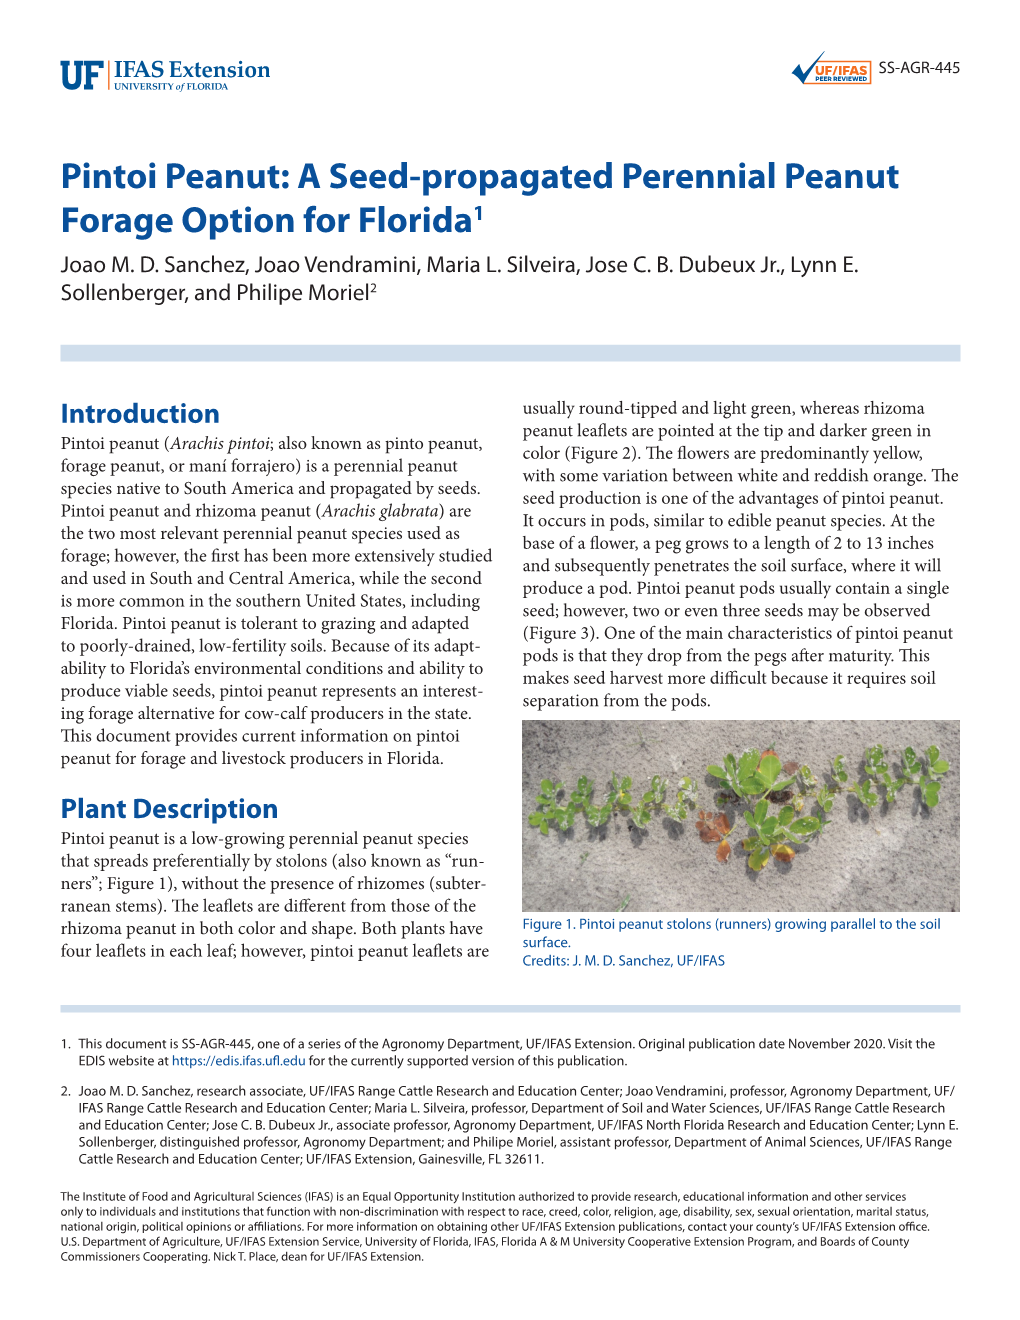 Pintoi Peanut: a Seed-Propagated Perennial Peanut Forage Option for Florida1 Joao M